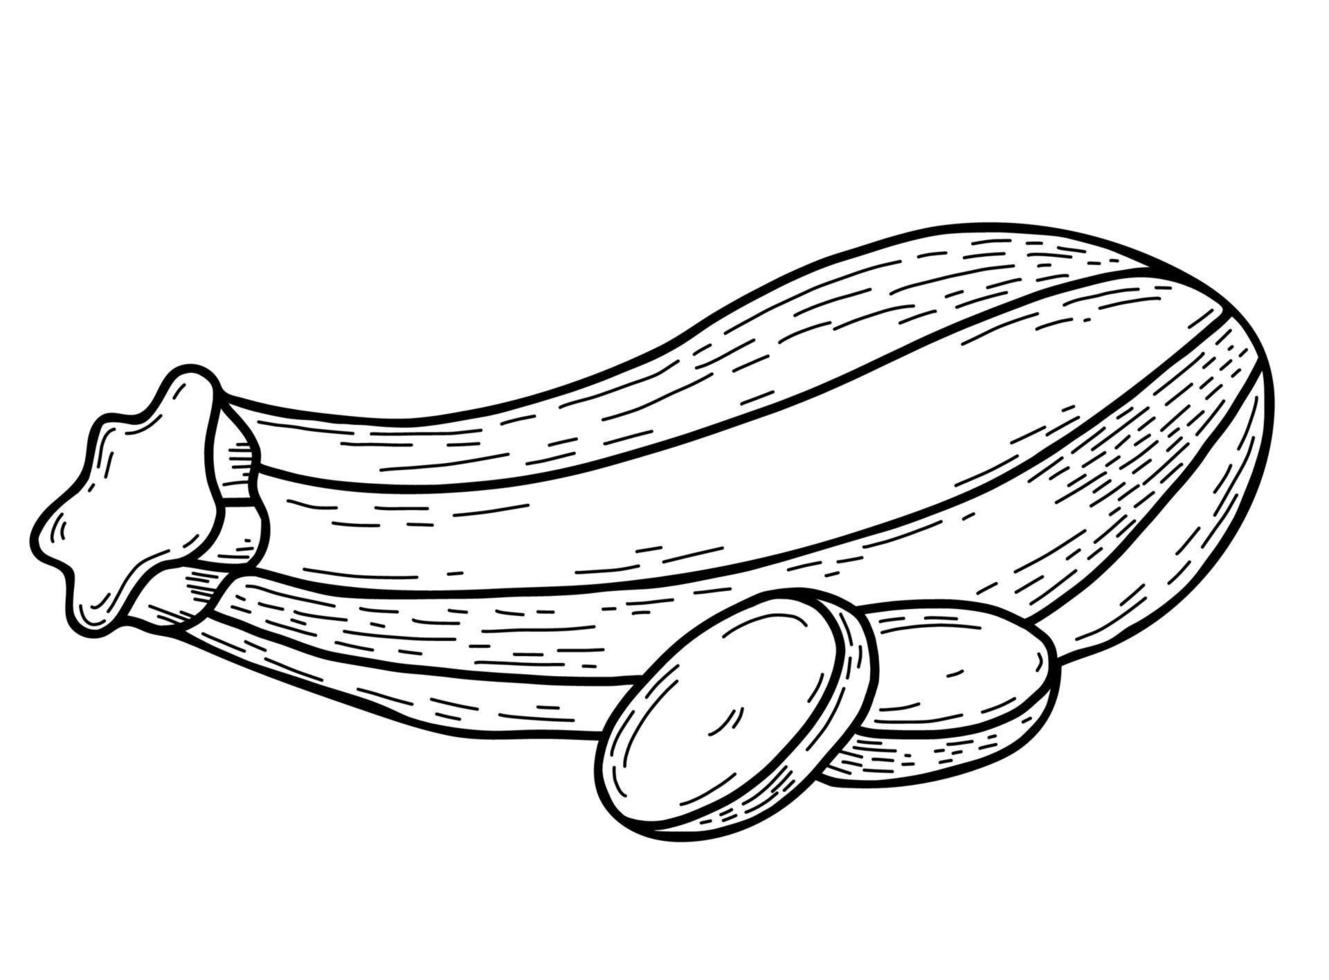 grönsaksmärg. vackra avlånga randiga zucchini och hackade bitar av grönsaker. vektor illustration. linjär handritning i doodle stil, kontur för design, inredning och dekoration